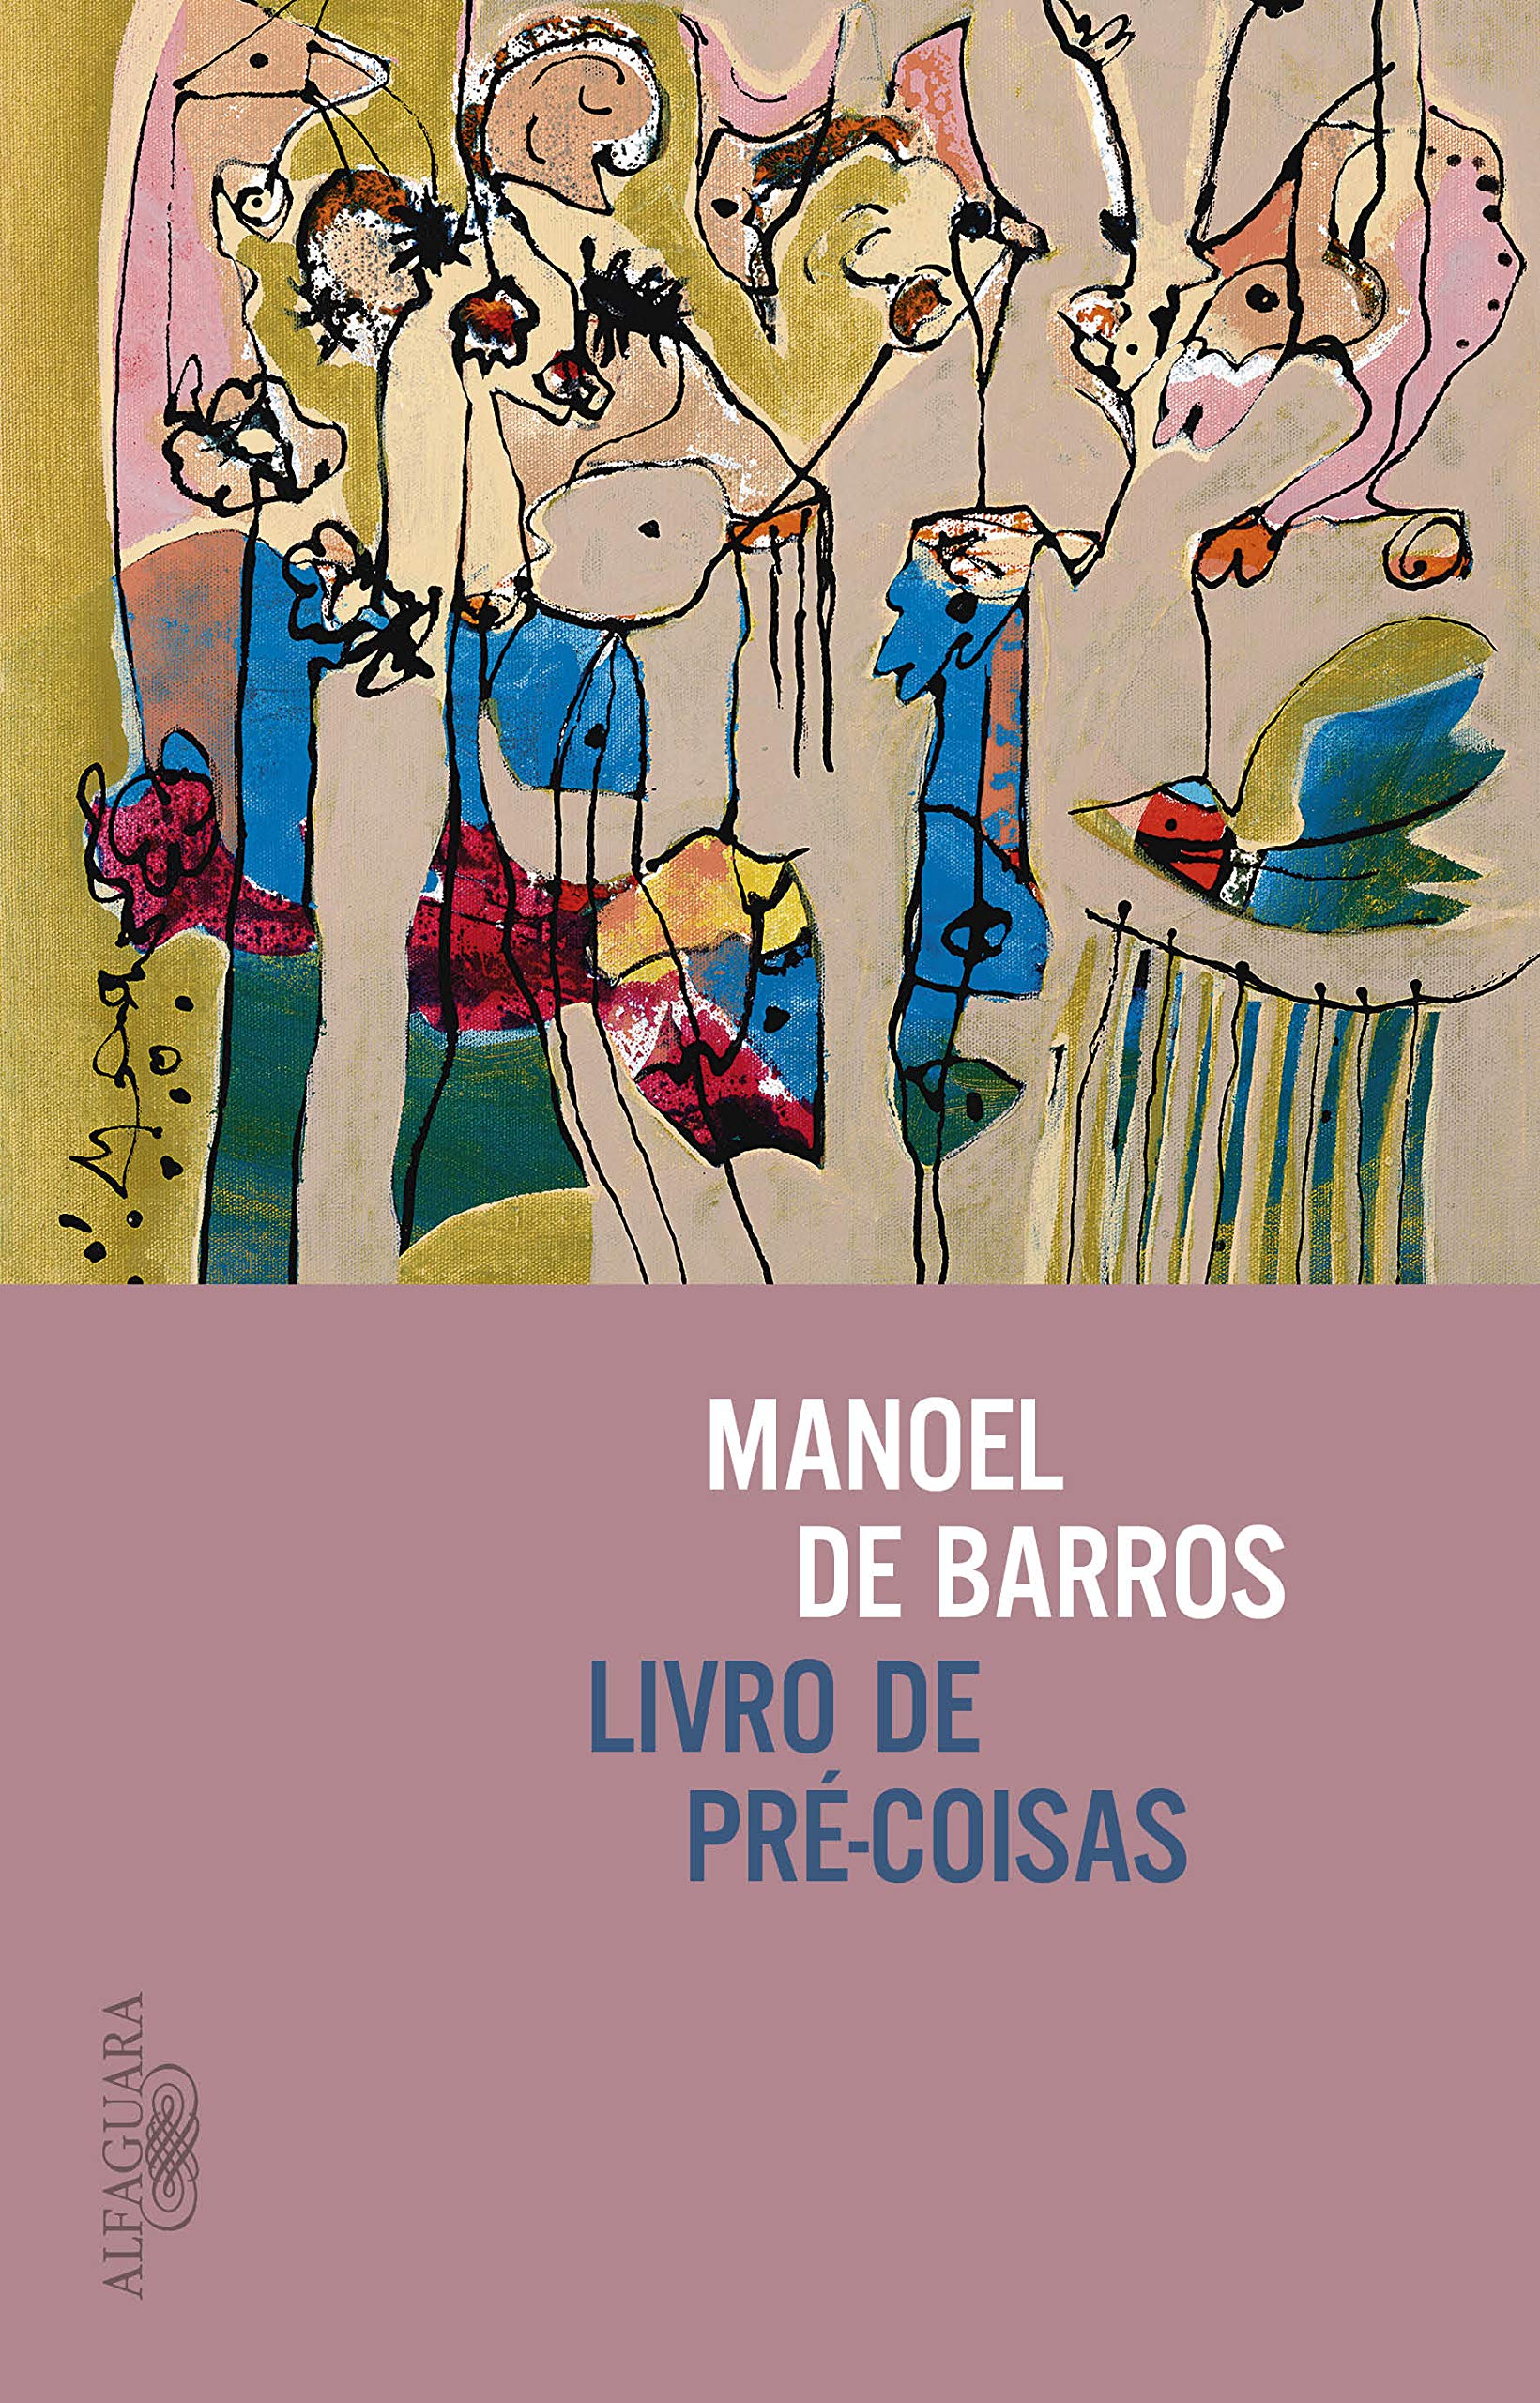 Livro 'Livro de pré-coisas' por Manoel de Barros